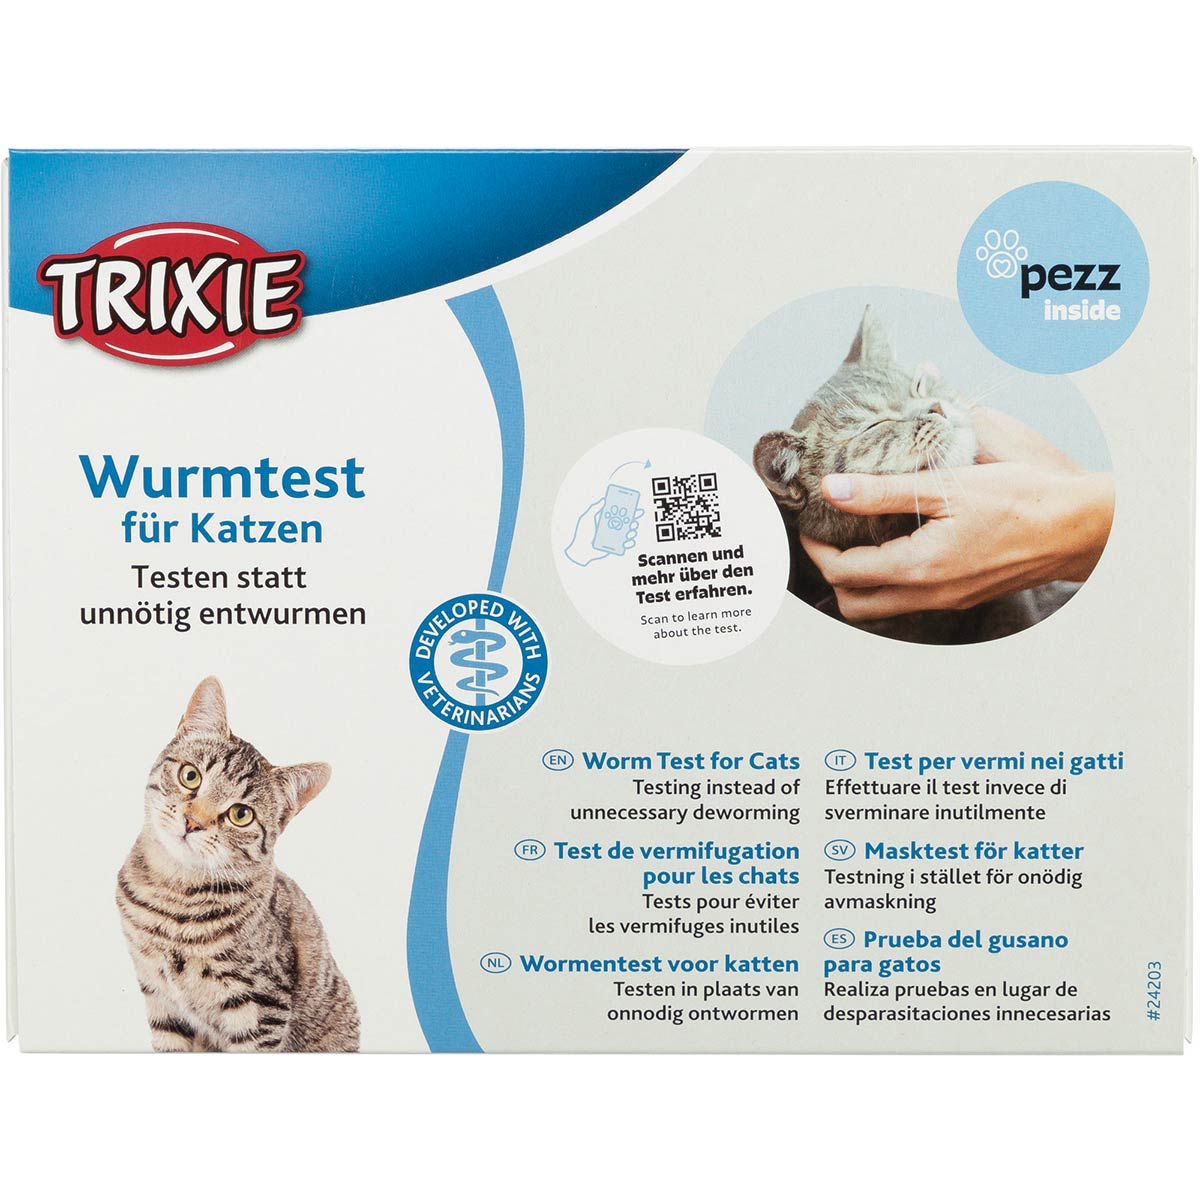 Trixie Wurmtest für Katzen von TRIXIE